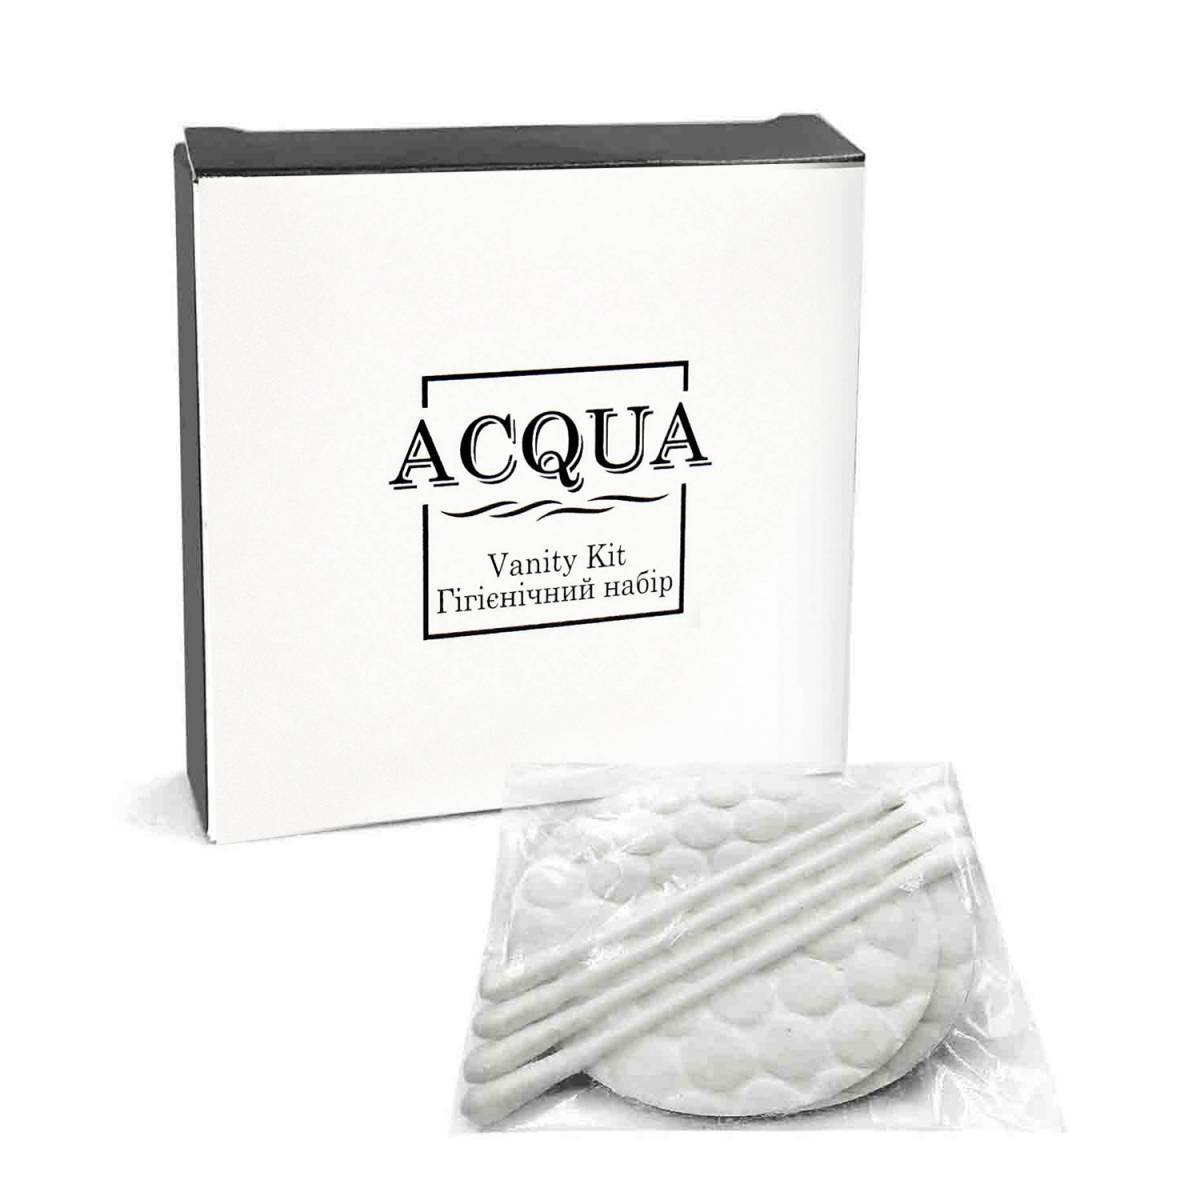 Косметический набор ACQUA для гостиниц, в картонной коробочке Q-VK HSG